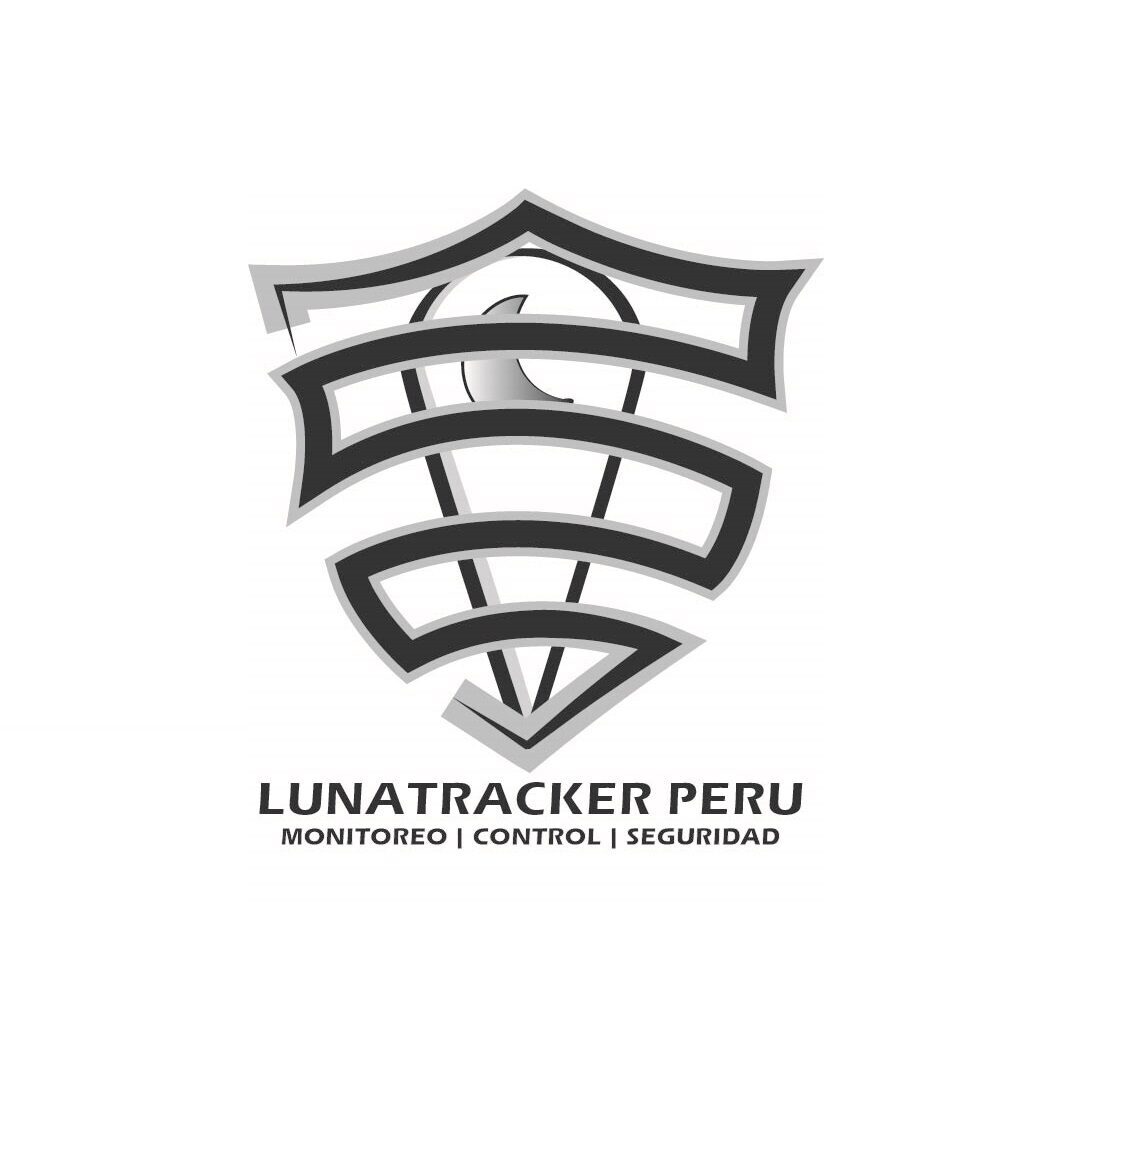 Lunatracker Peru